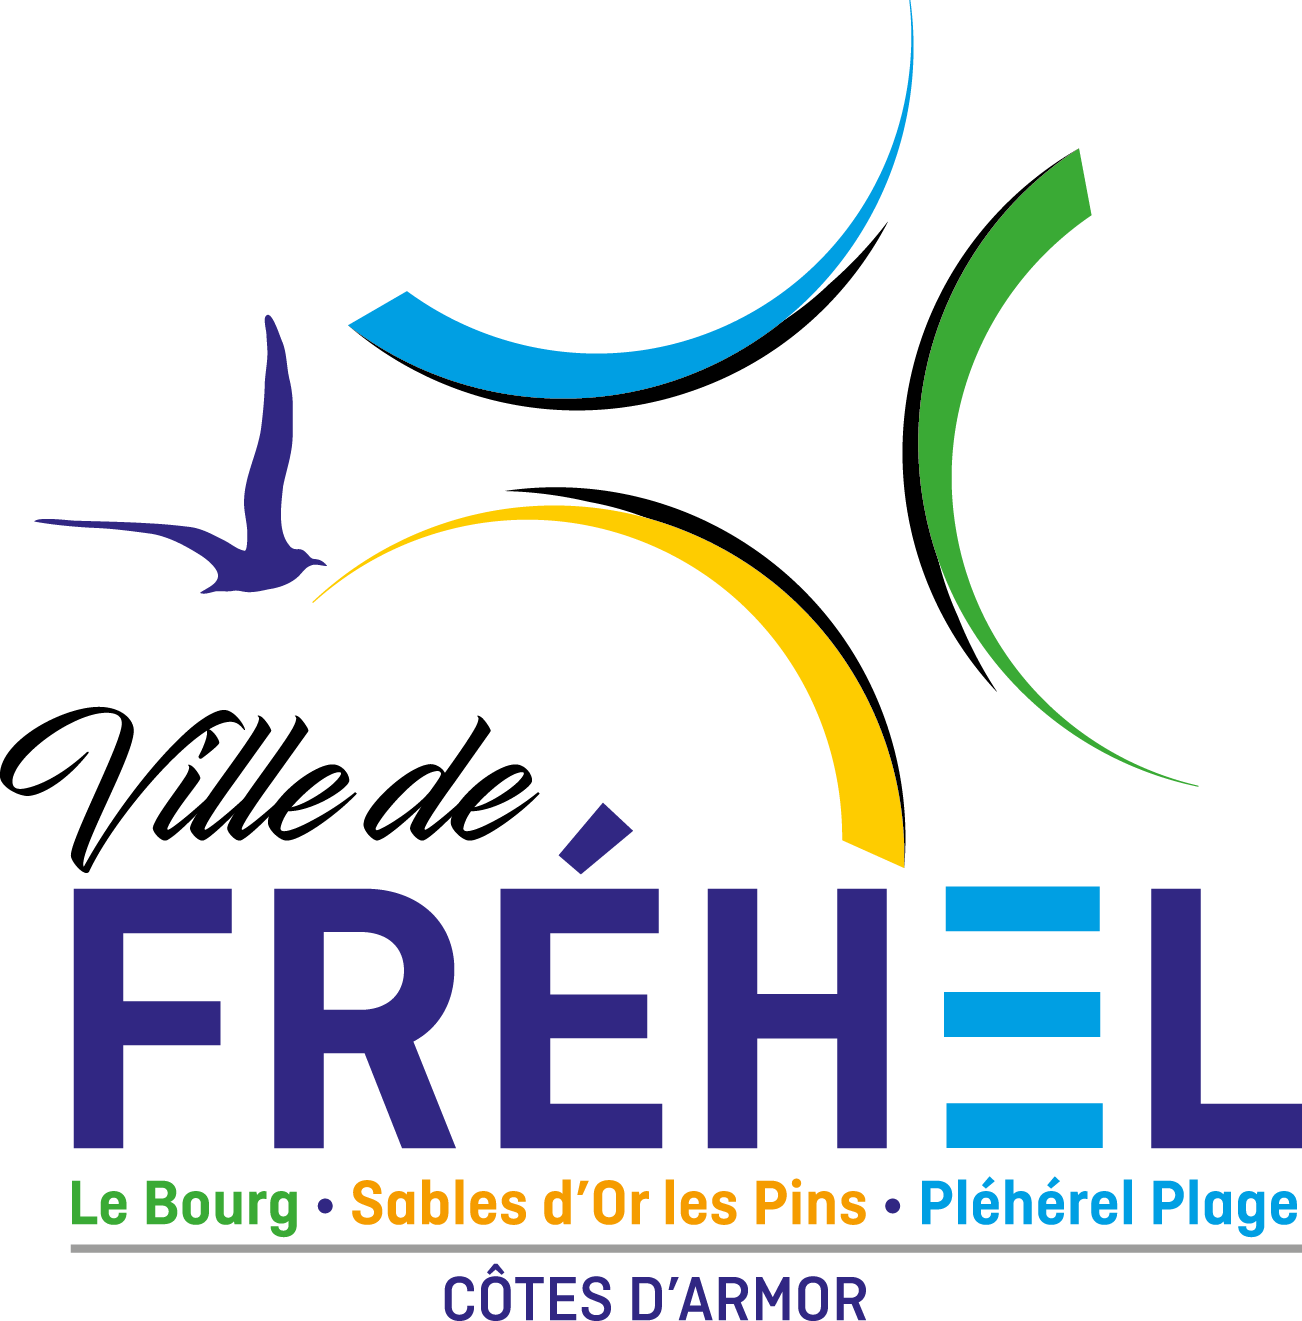 Commune de Fréhel